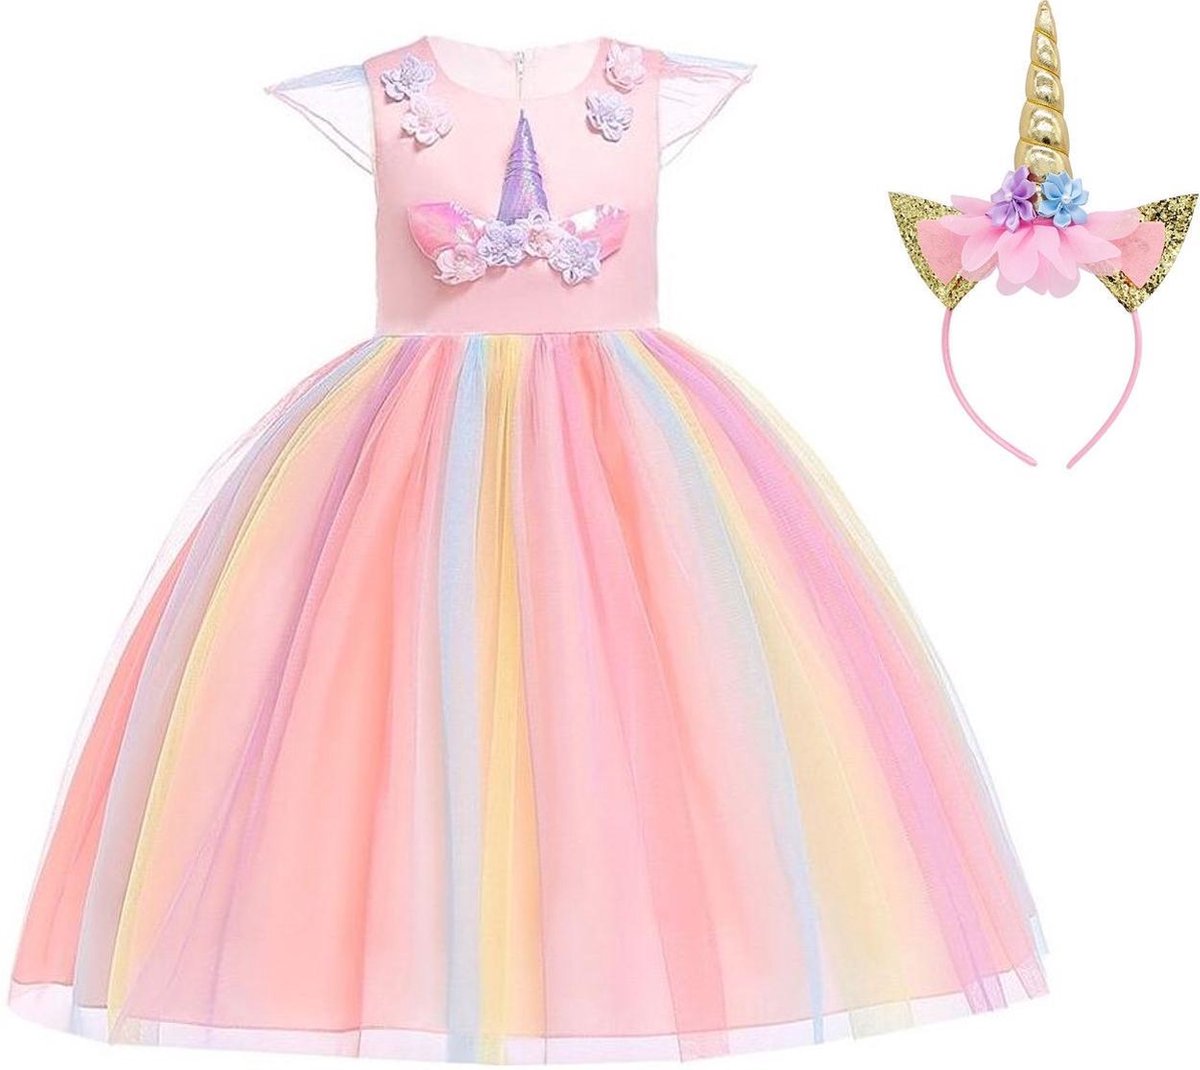 Eenhoorn jurk unicorn jurk verkleedjurk eenhoorn kostuum - roze Classic 122-128 (130) + haarband Prinsessenjurk meisje verkleedkleren meisje - La Señorita